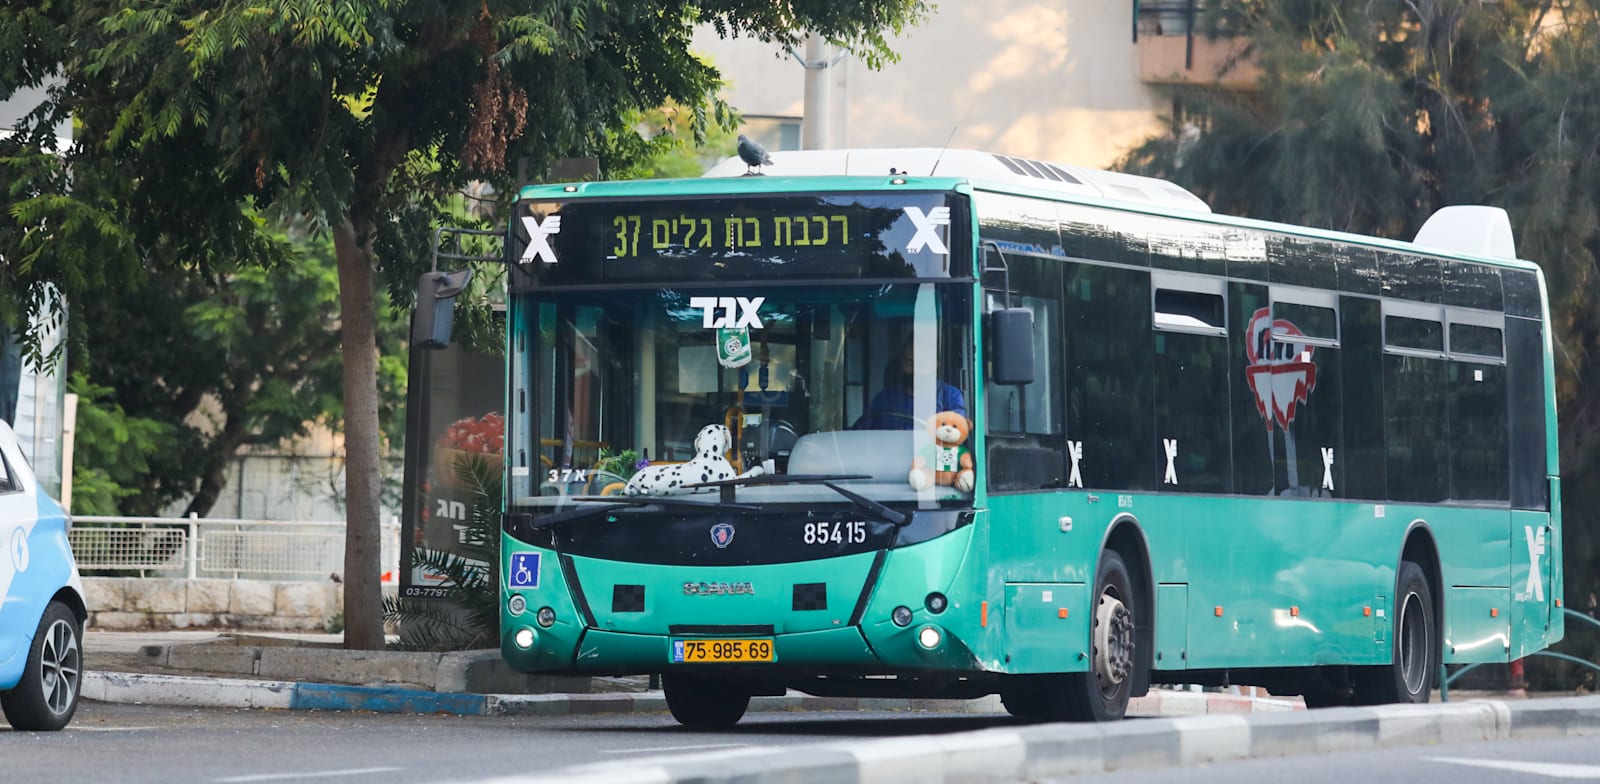 אוטובוס של אגד / צילום: שלומי יוסף